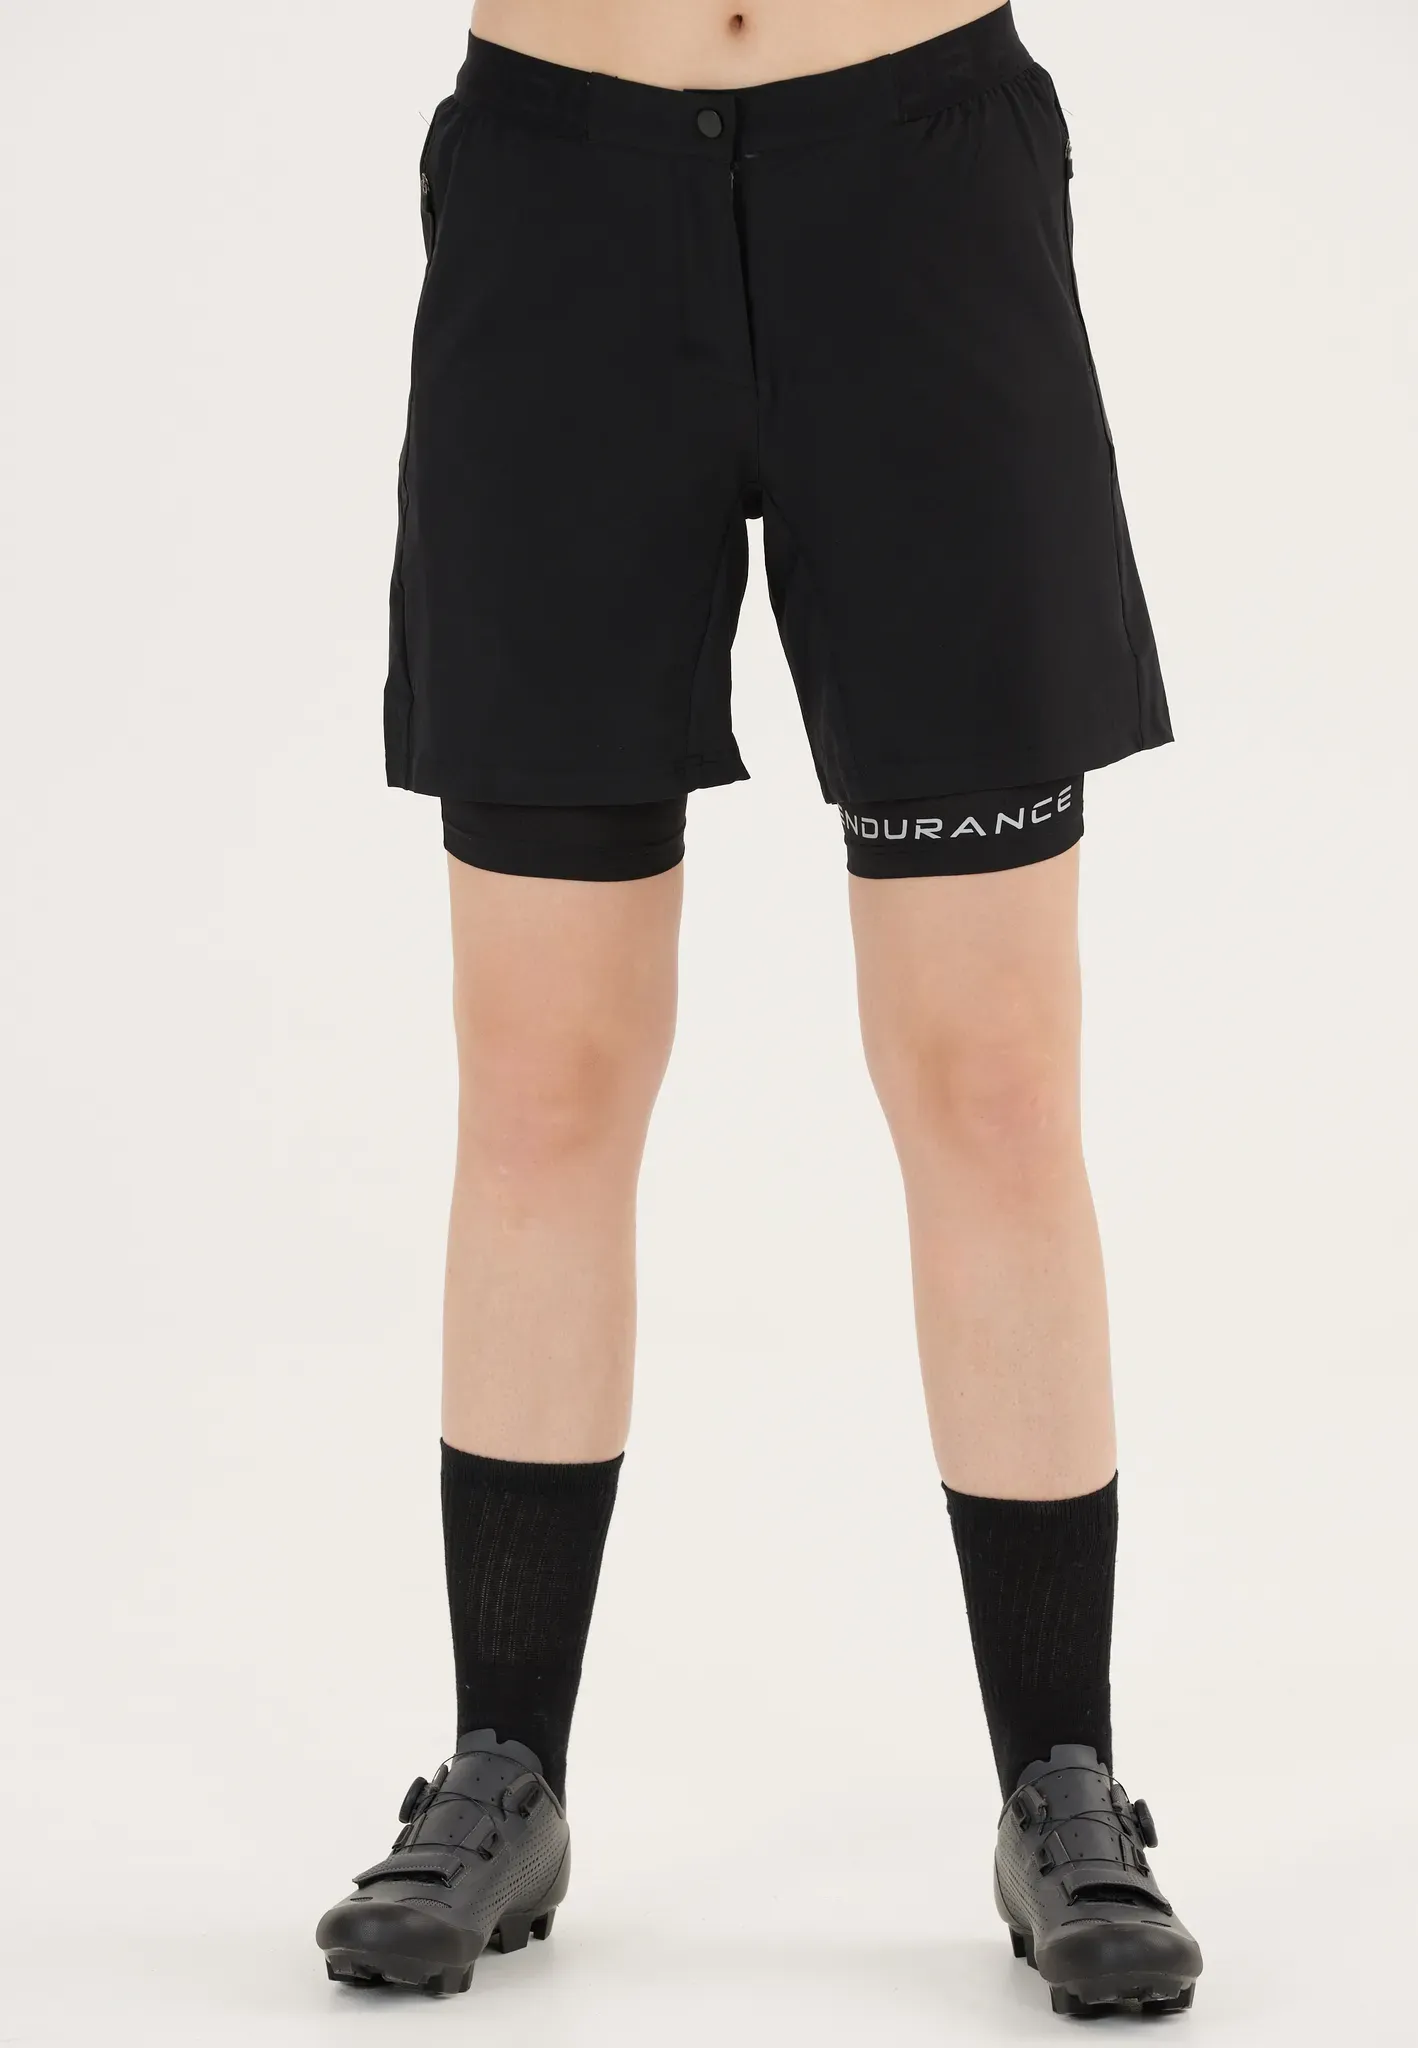 Radhose ENDURANCE "Macbeth" Gr. 40, EURO-Größen, schwarz Damen Hosen Sporthosen im schnelltrocknenden 2-in-1-Design